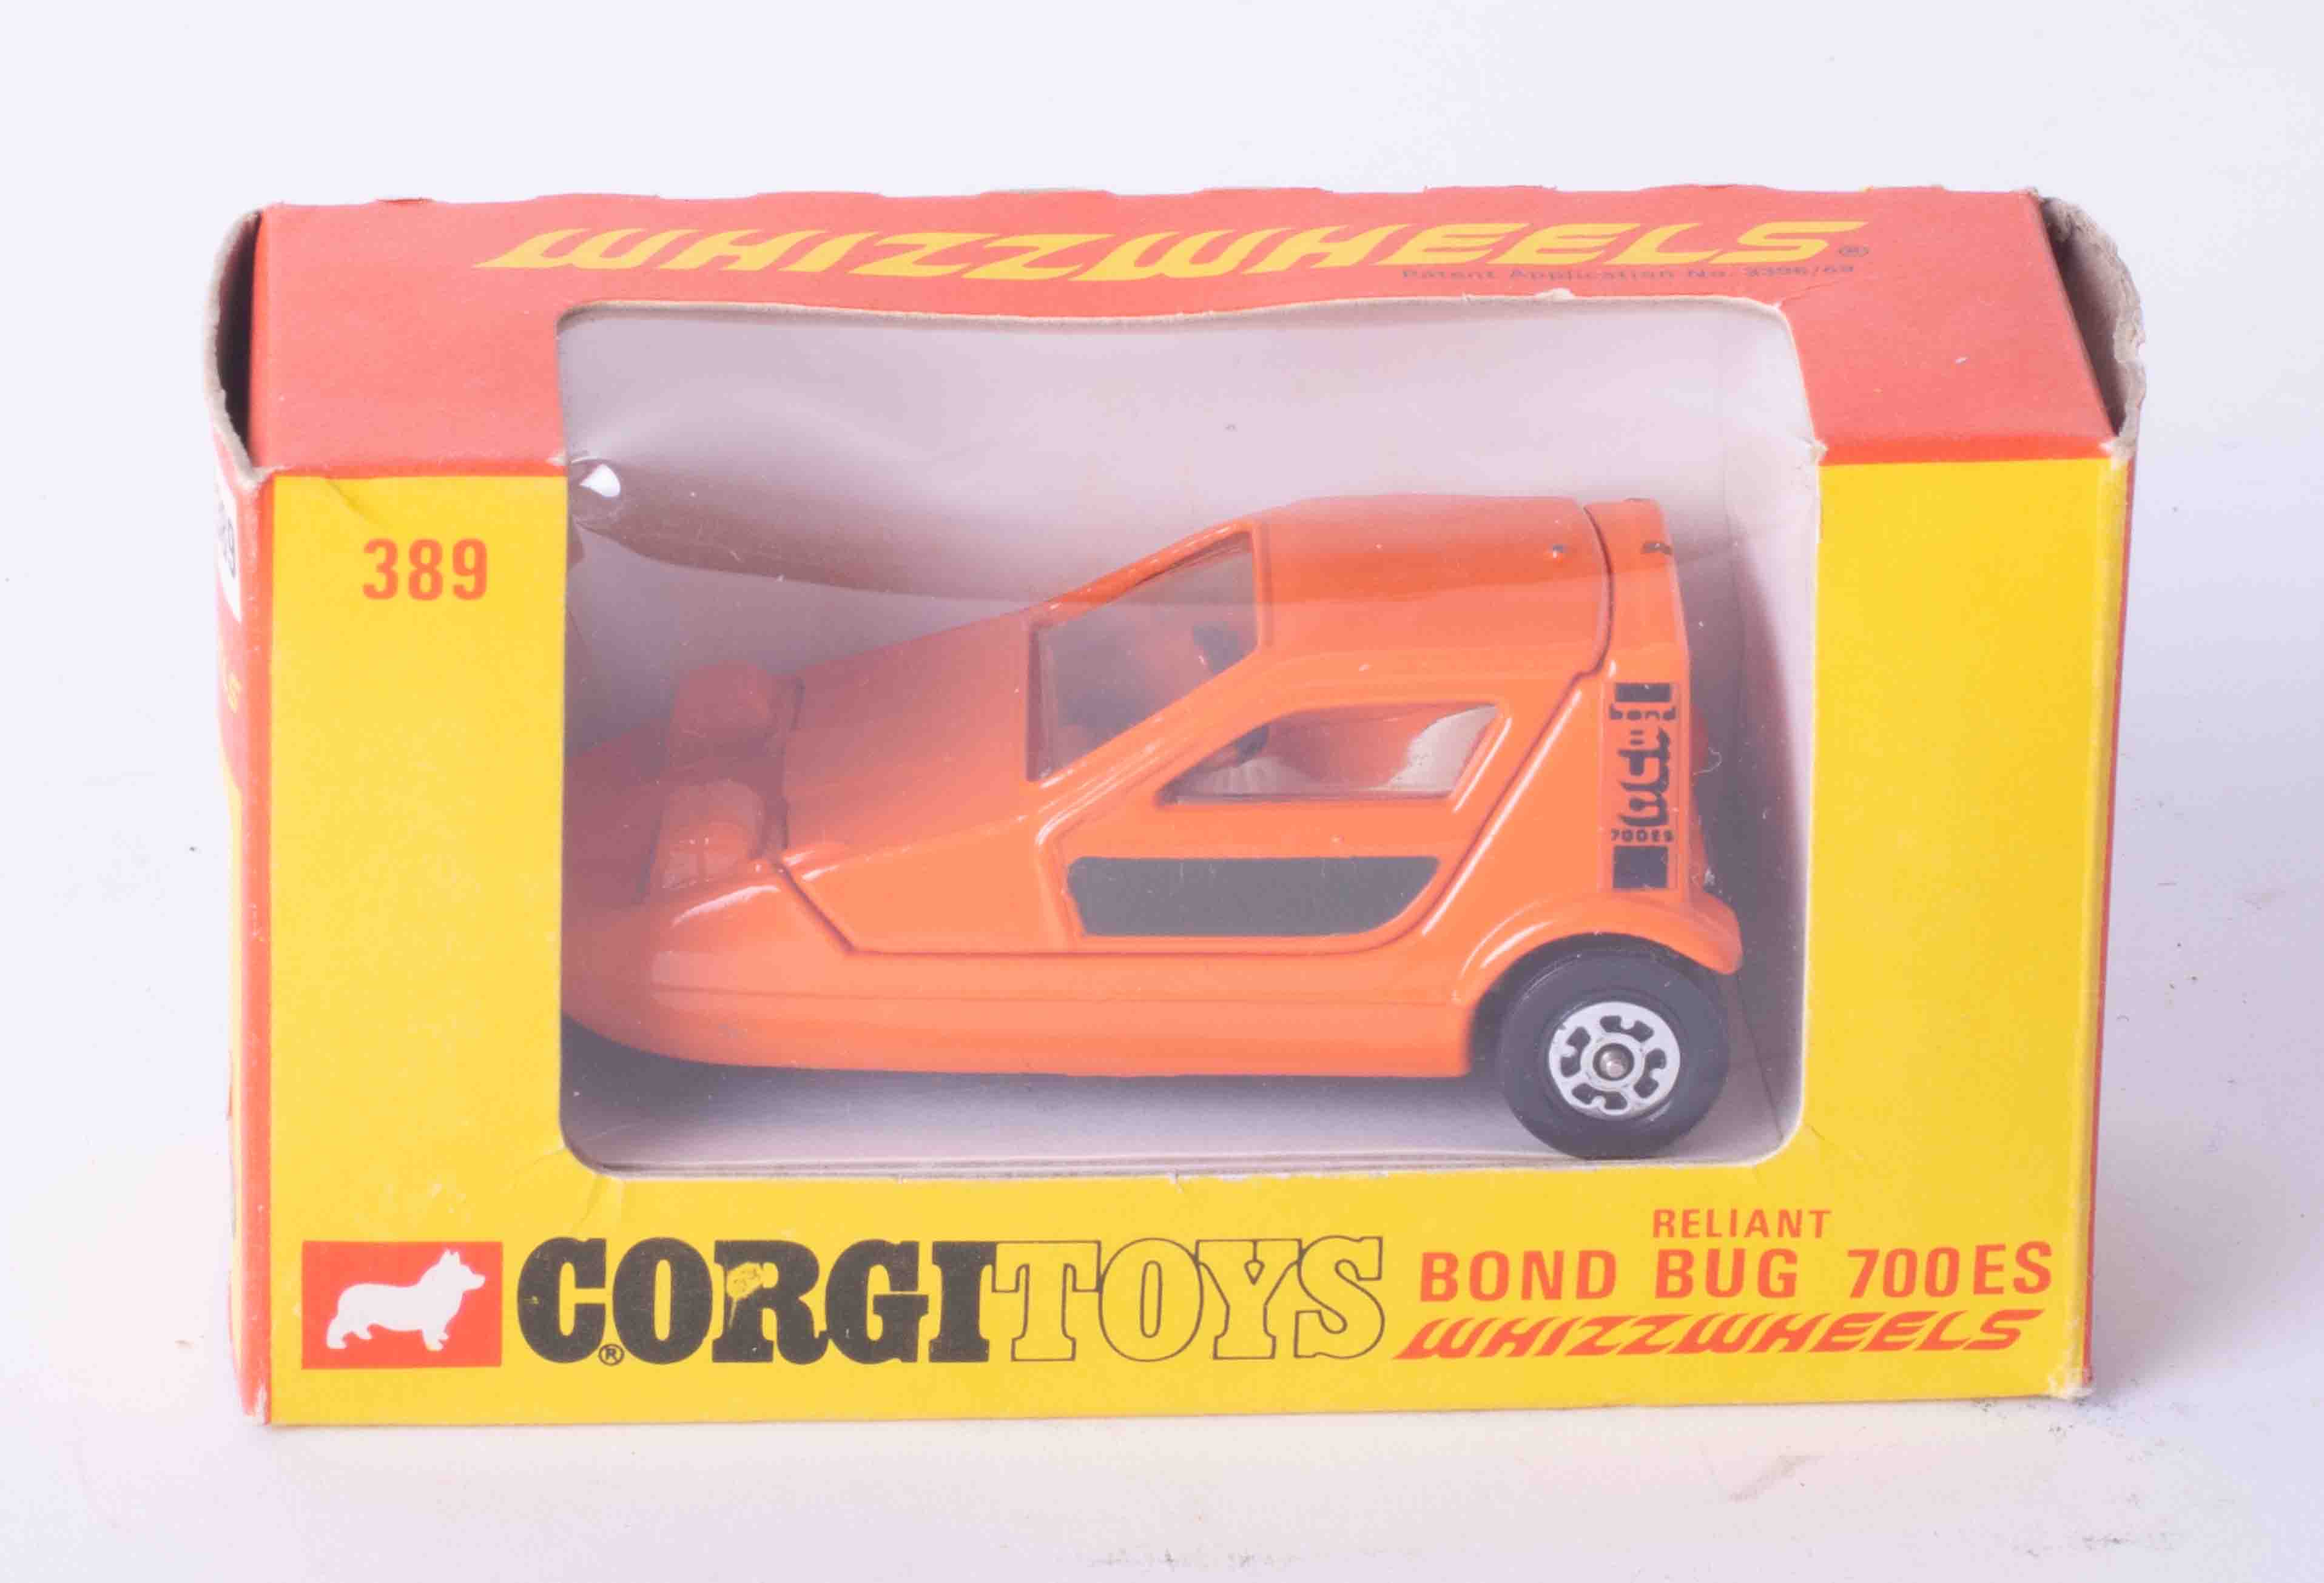 Corgi Toys Whizzwheels 389 Reliant Bond Bug, boxed.